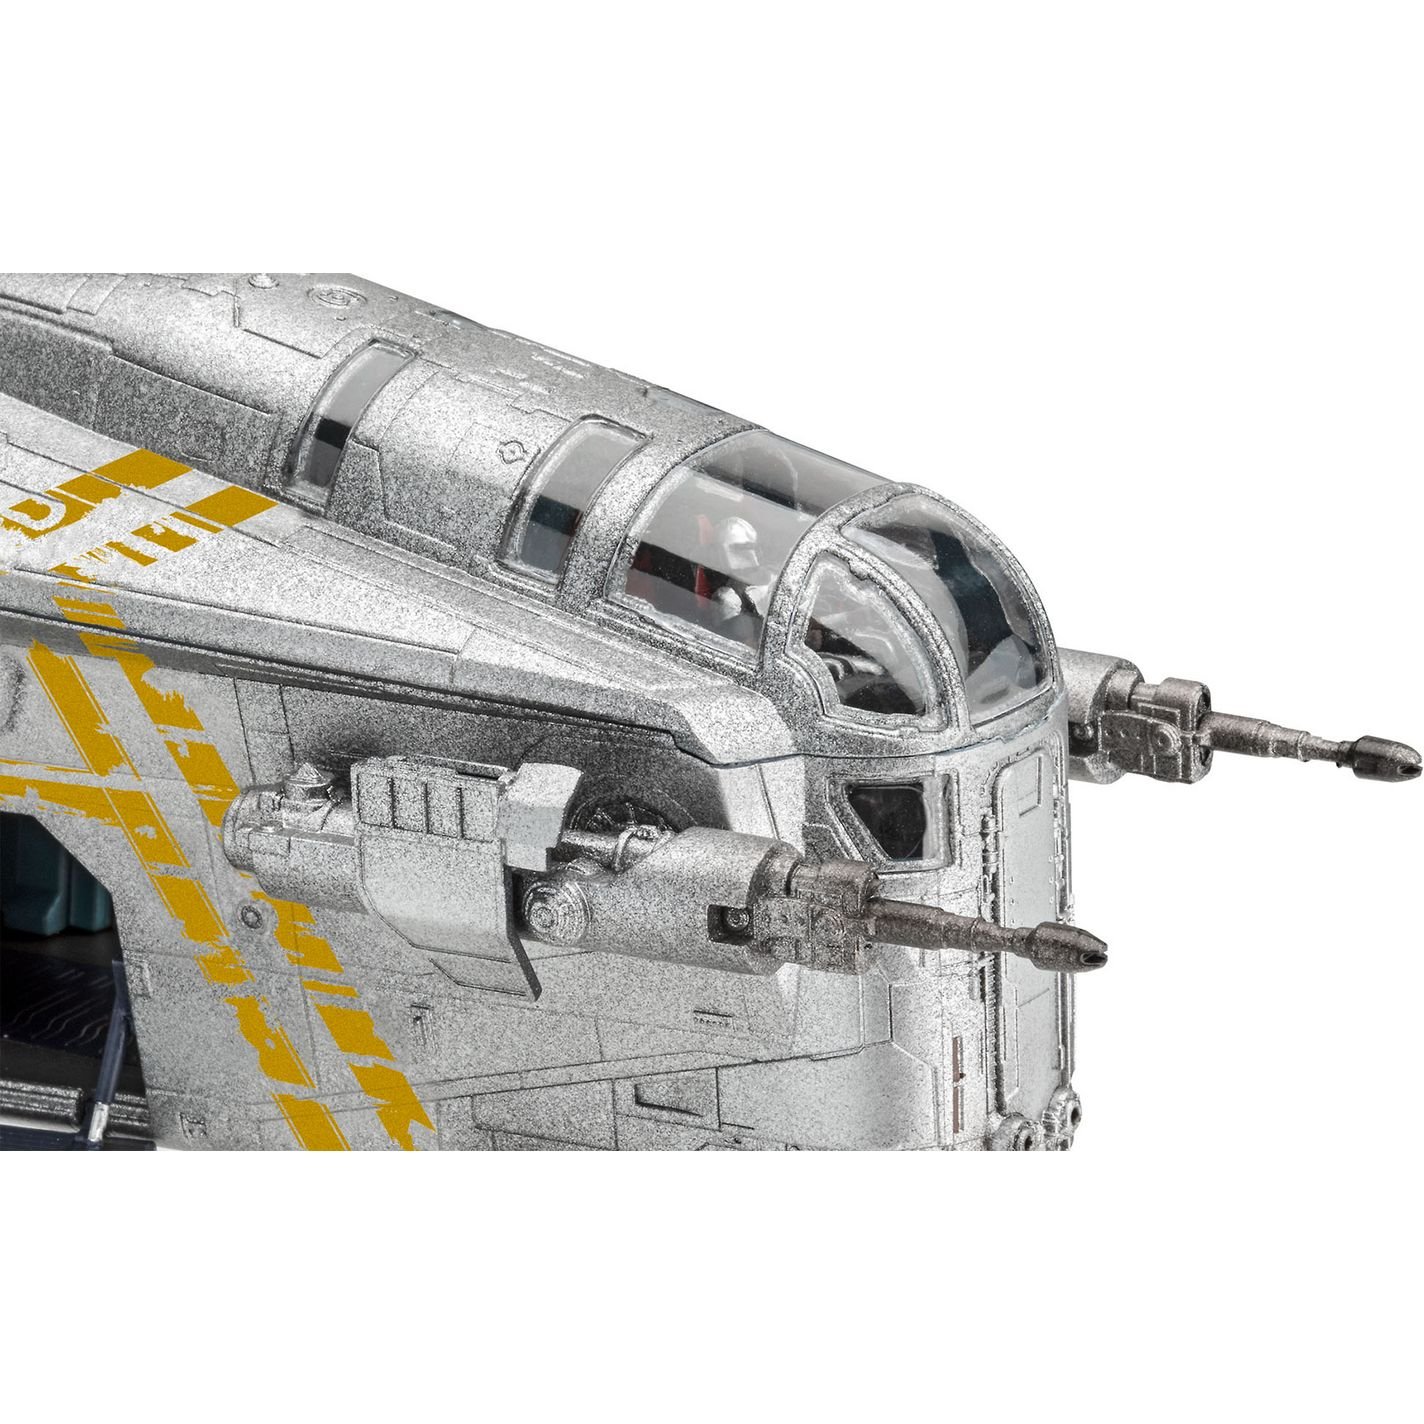 Збірна модель Revell Корабель The Razor Crest з серіалу Мандалорець, рівень 3, масштаб 1:72, 101 деталь (RVL-06781) - фото 5